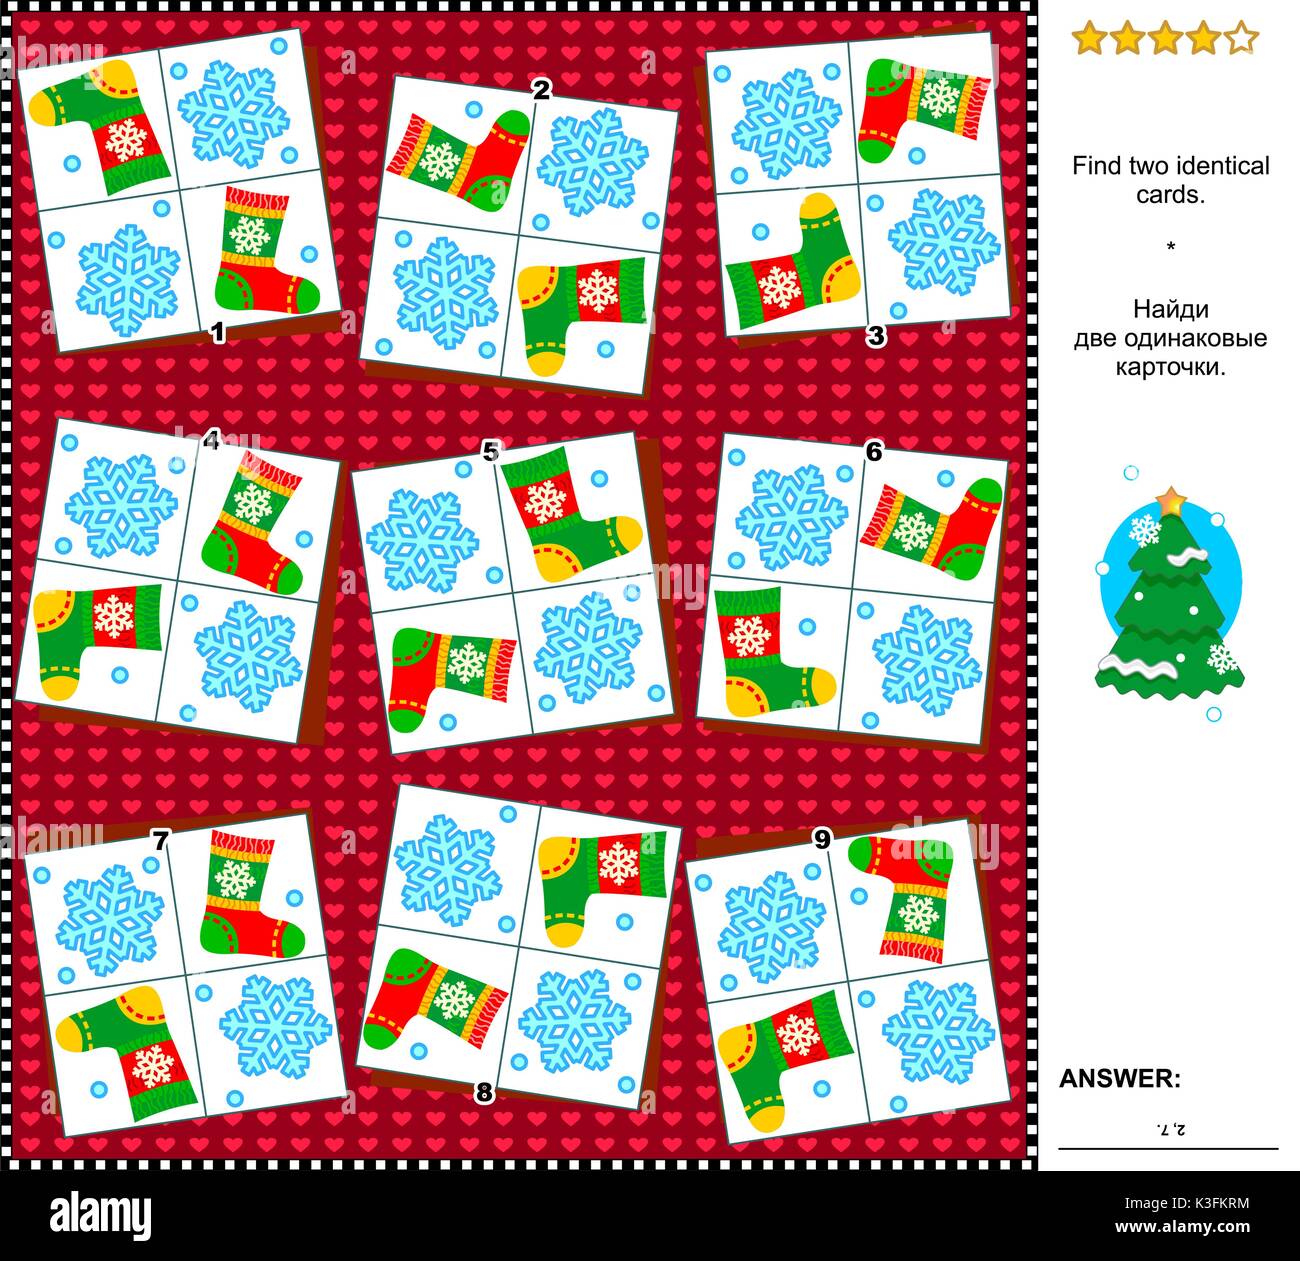 Natale o Capodanno a tema vacanze visual logic puzzle: trovare le due carte uguali. Adatto sia per i bambini che per gli adulti. Risposta inclusa. Illustrazione Vettoriale